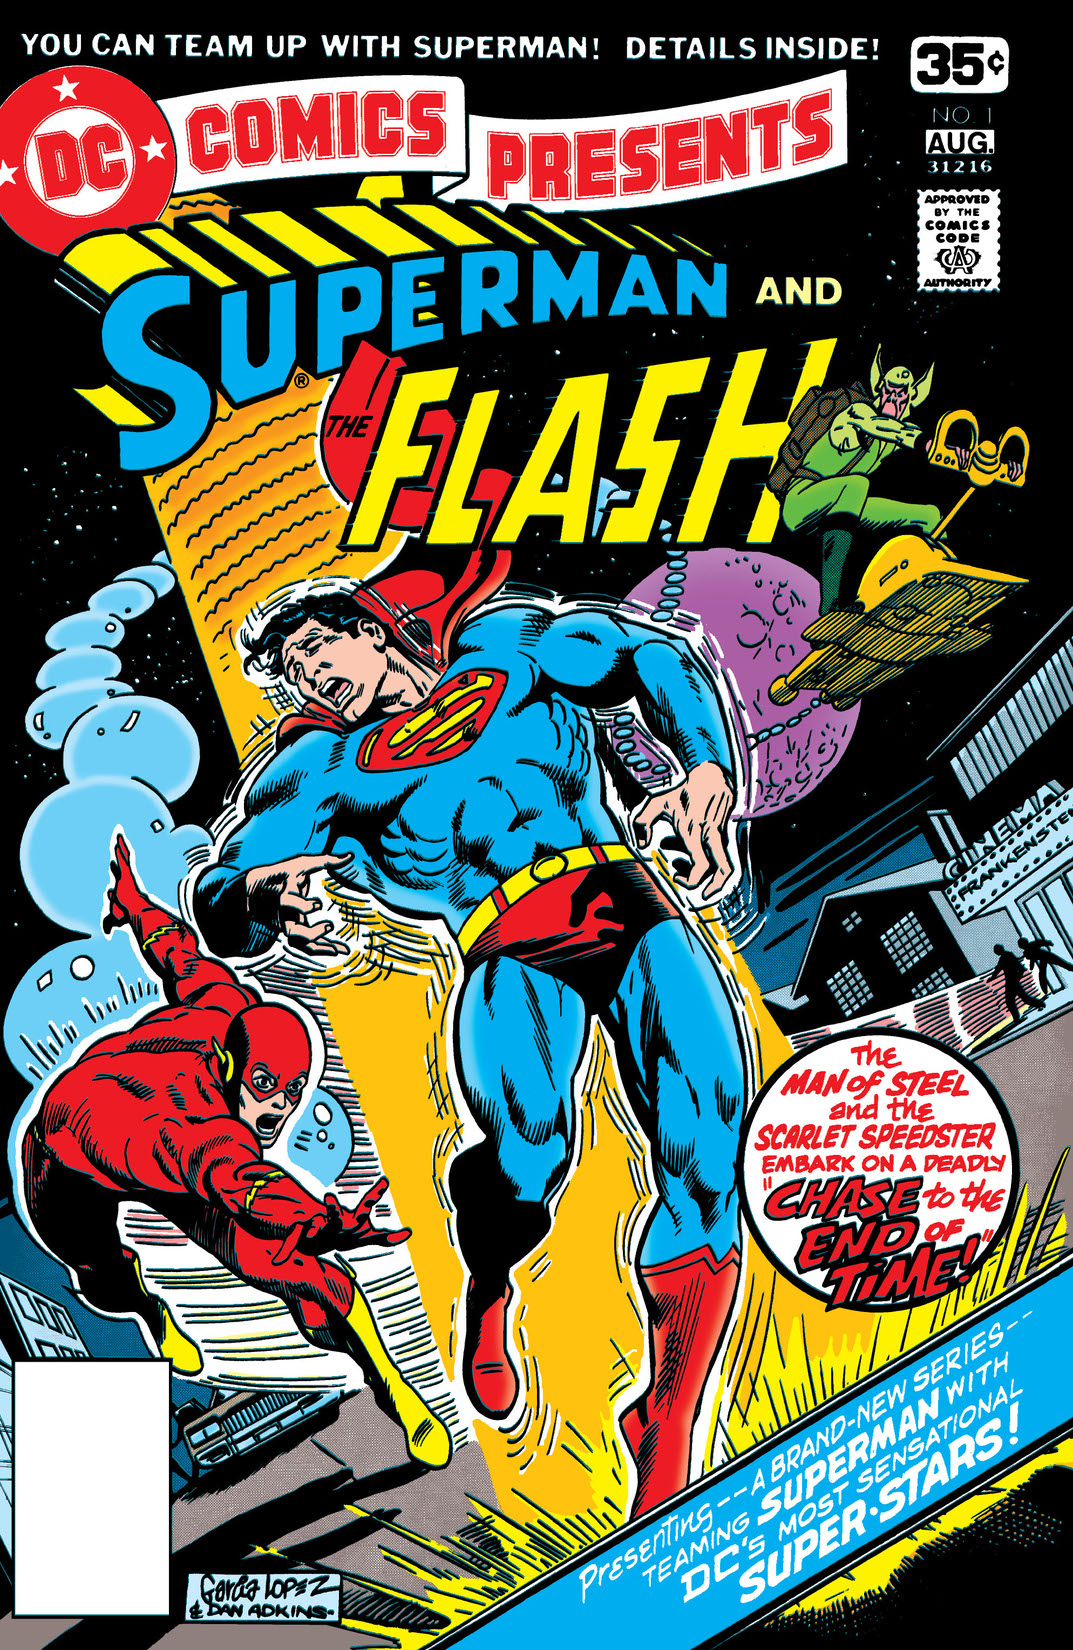 DC Comics Presents (1978-) #1 preview images